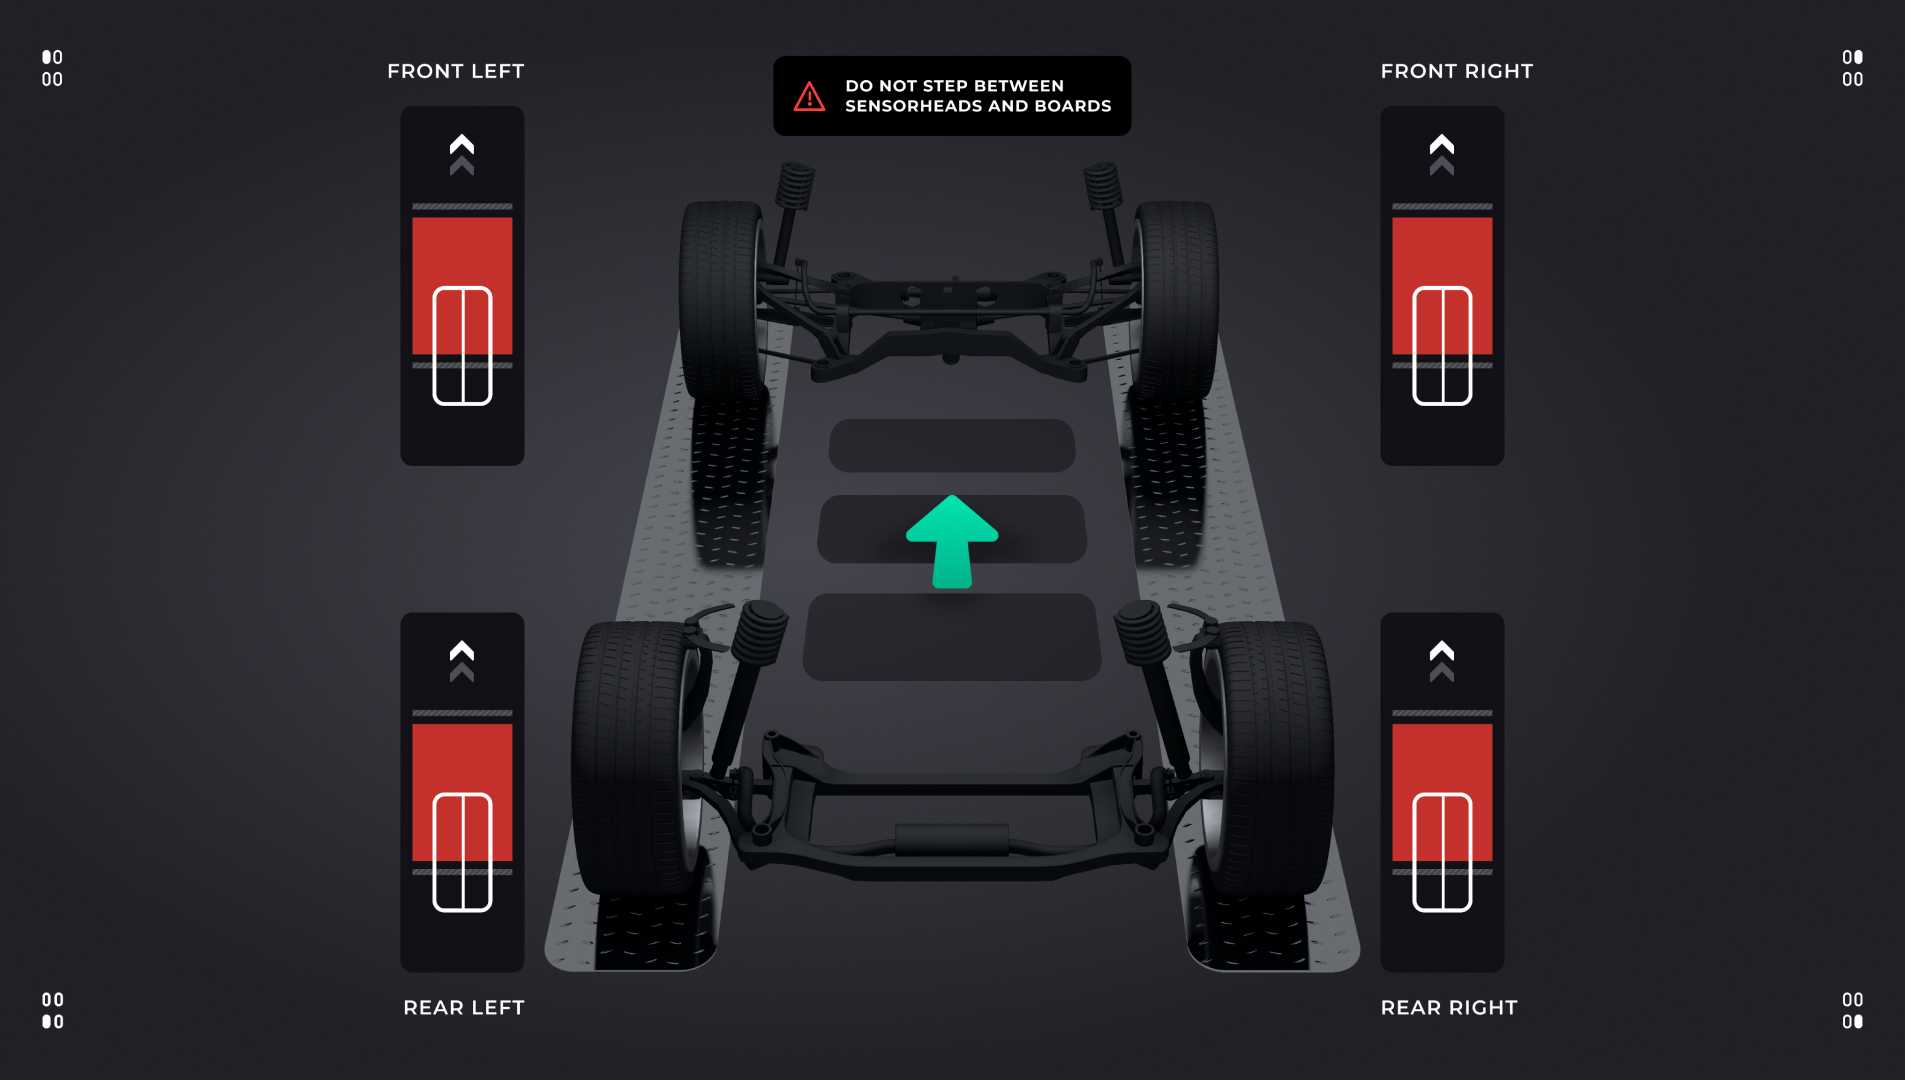 UI design nærbillede af indlejret software, der viser et køretøj.